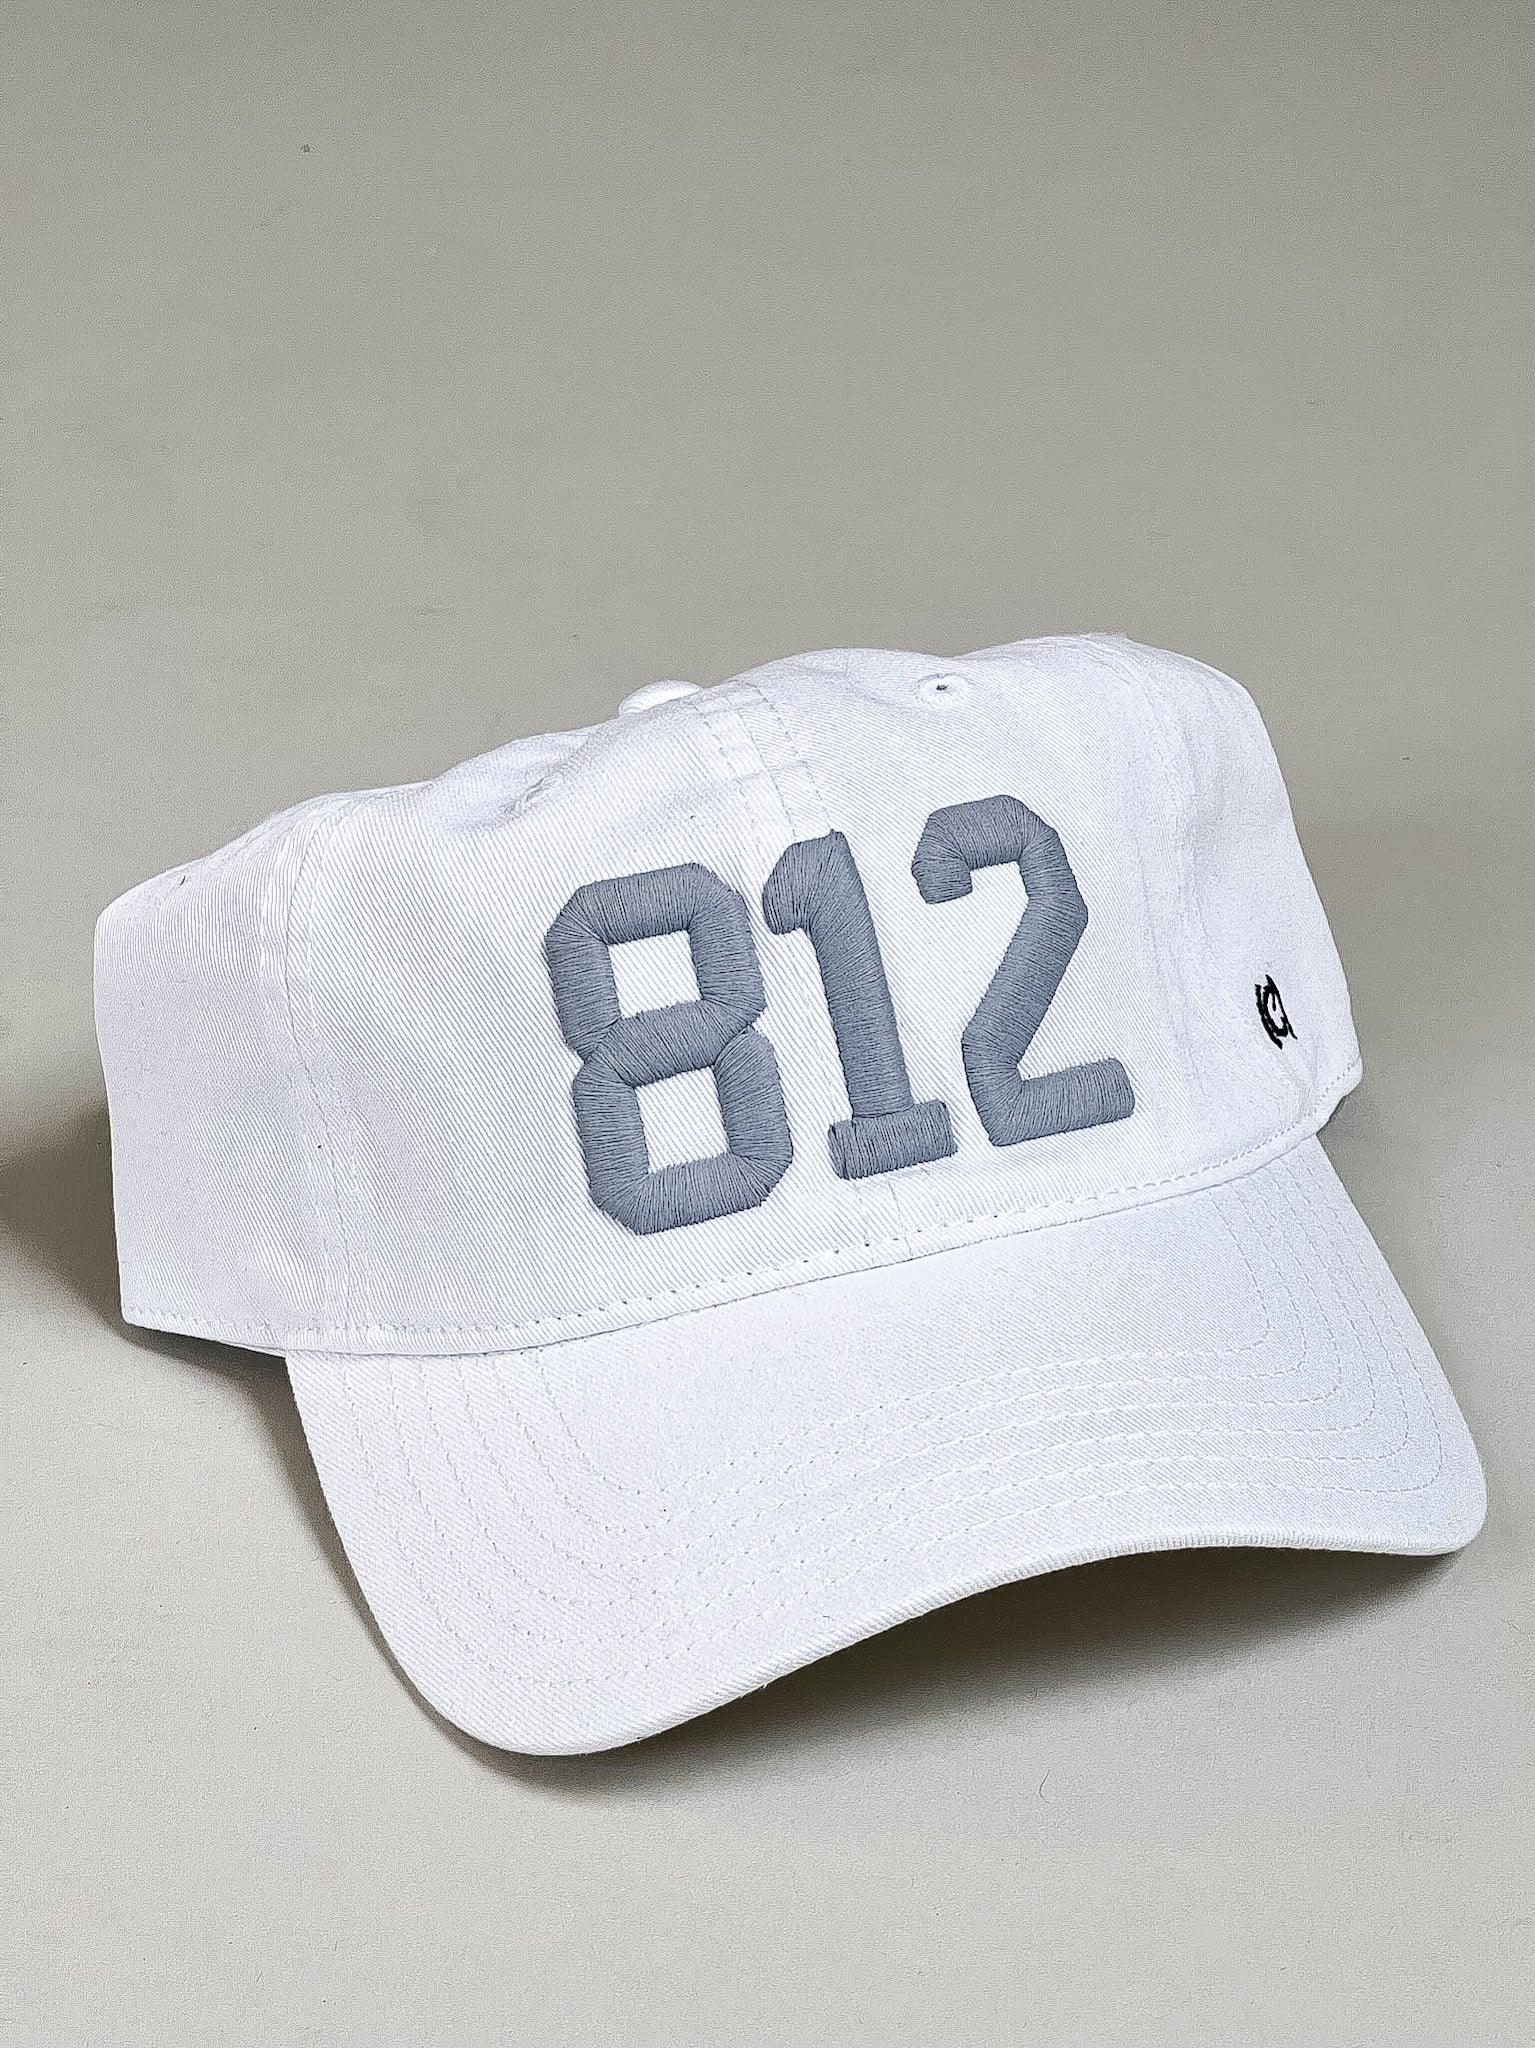 812 Hat - White w/ Grey - Flutter